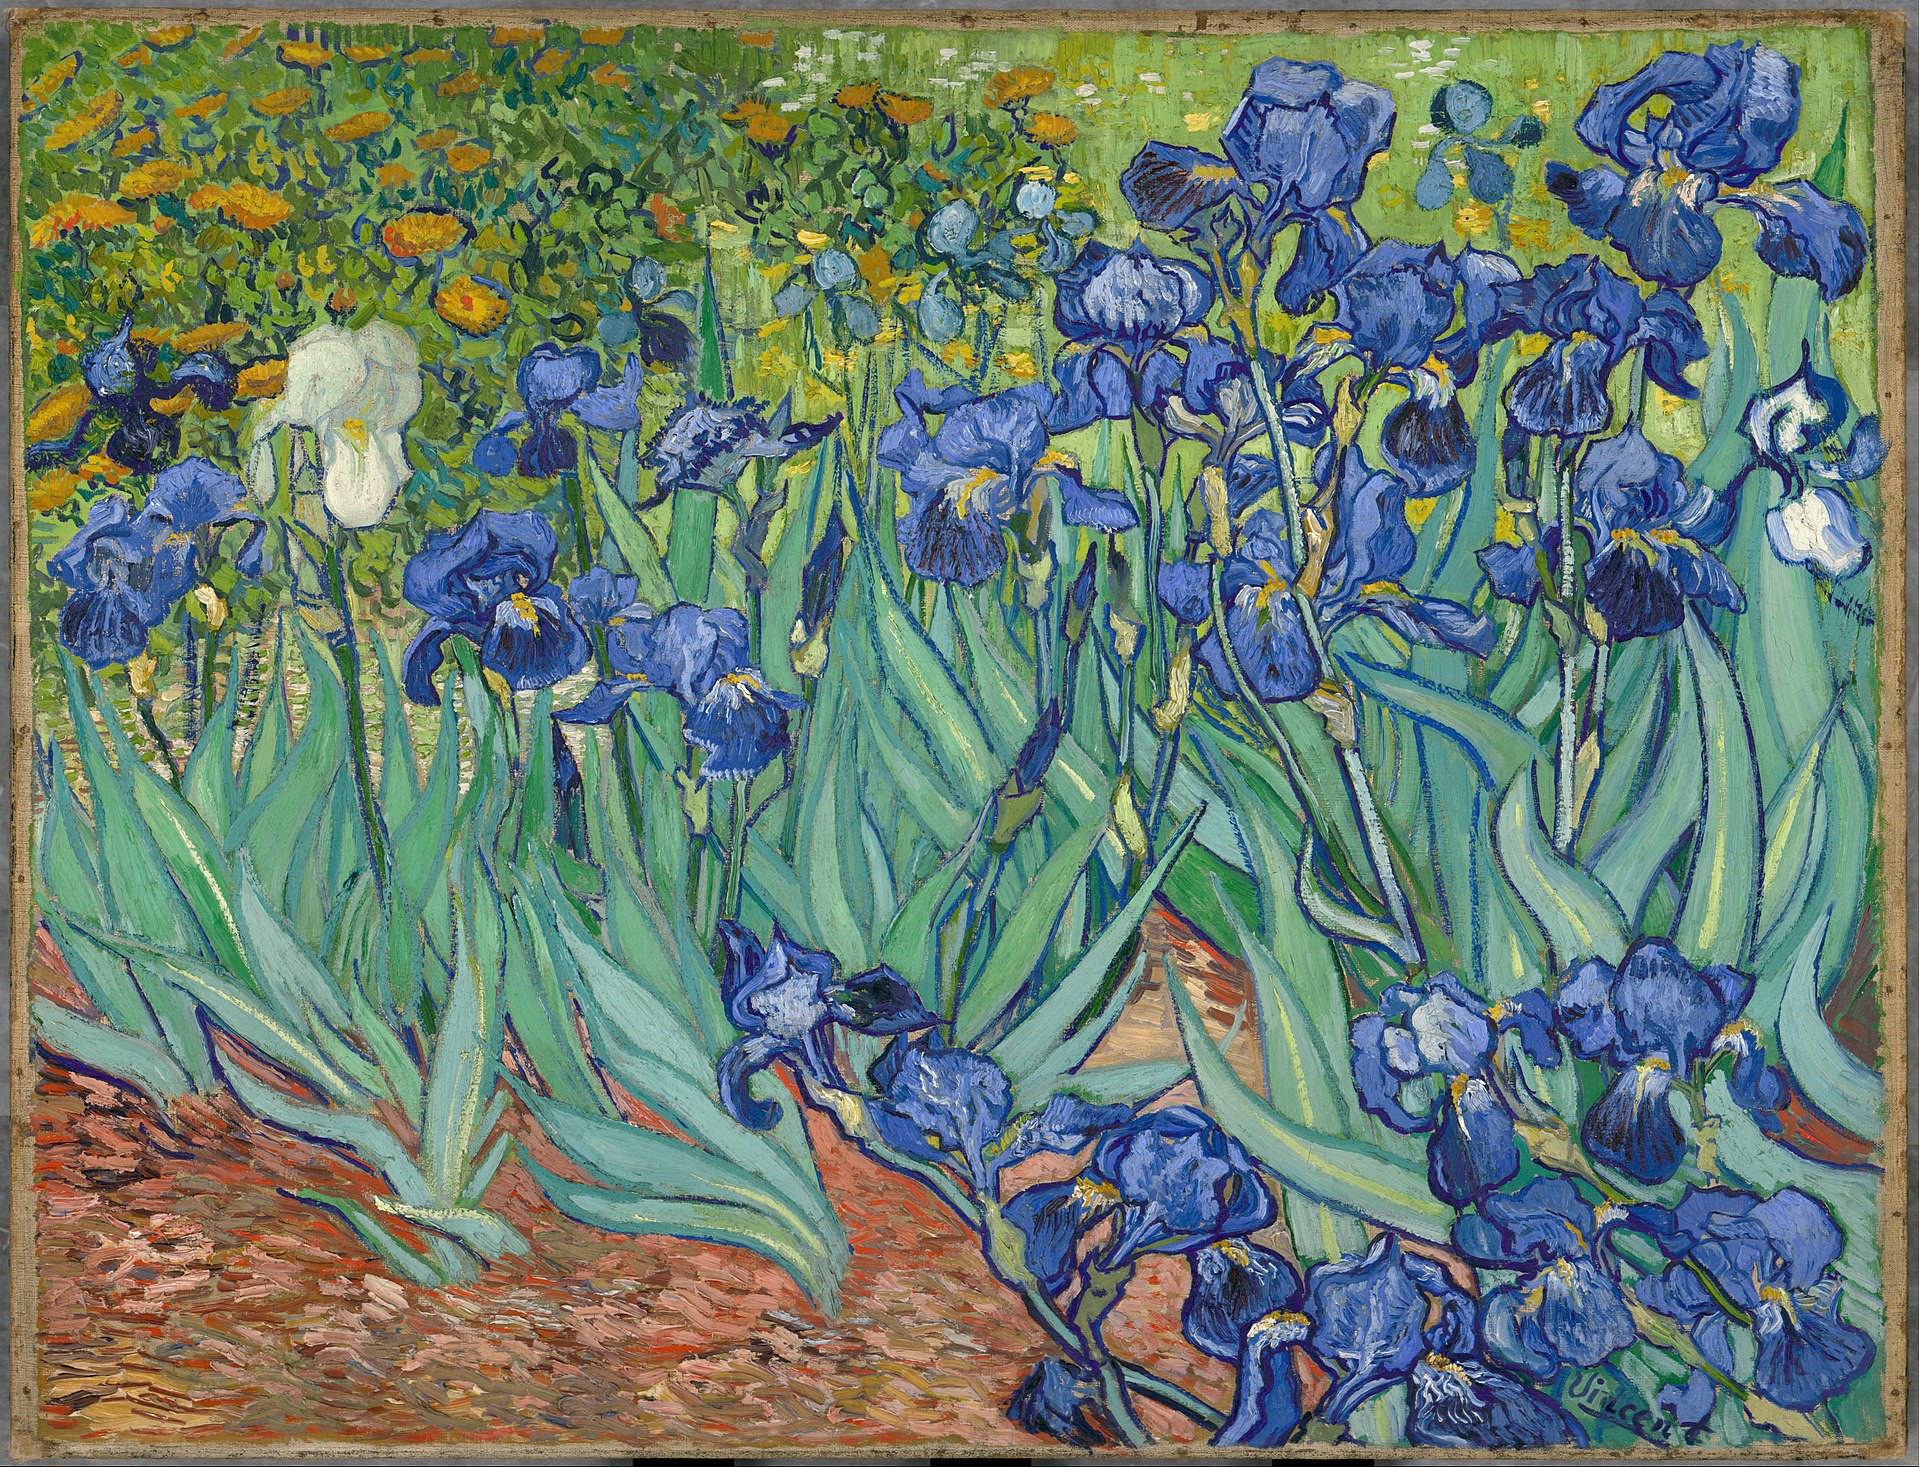 Nỗi buồn và sự lặng lẽ trong tác phẩm của nghệ sĩ Van Gogh sẽ khiến bạn suy ngẫm về ý nghĩa sâu xa của cuộc đời. Tuy nhiên, bức tranh này cũng đầy những chi tiết độc đáo và màu sắc tươi sáng, đem lại sự bình yên cho tâm hồn của bạn.